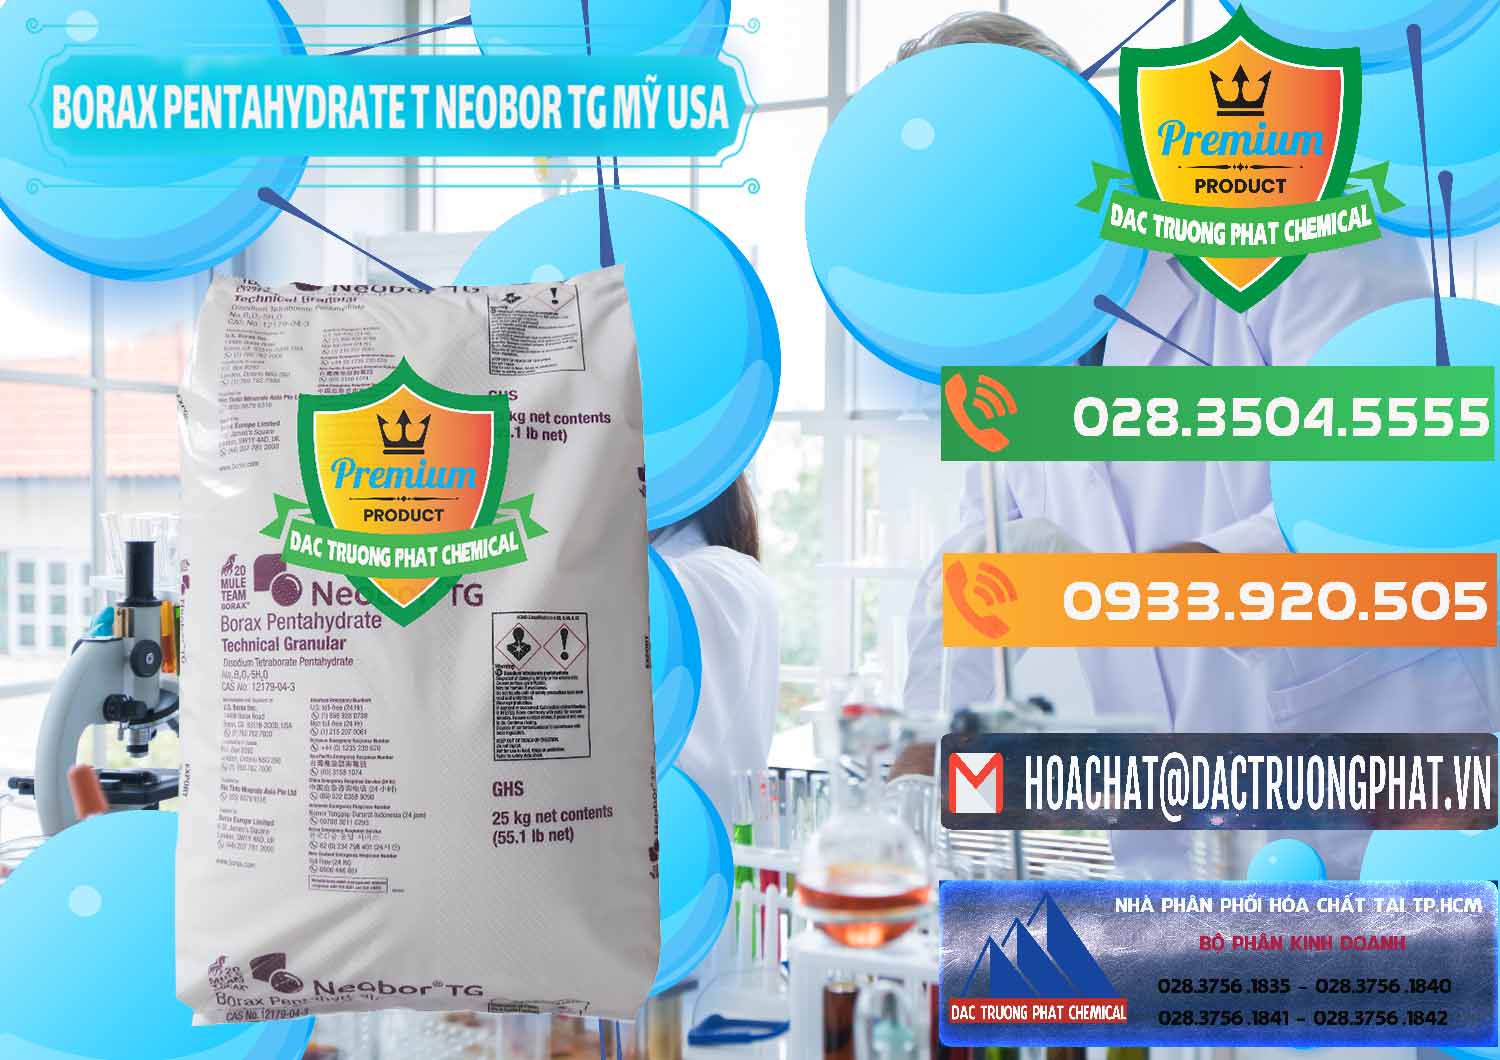 Chuyên bán và phân phối Borax Pentahydrate Technical Granular Neobor TG Mỹ Usa - 0225 - Kinh doanh _ cung cấp hóa chất tại TP.HCM - hoachatxulynuoc.com.vn